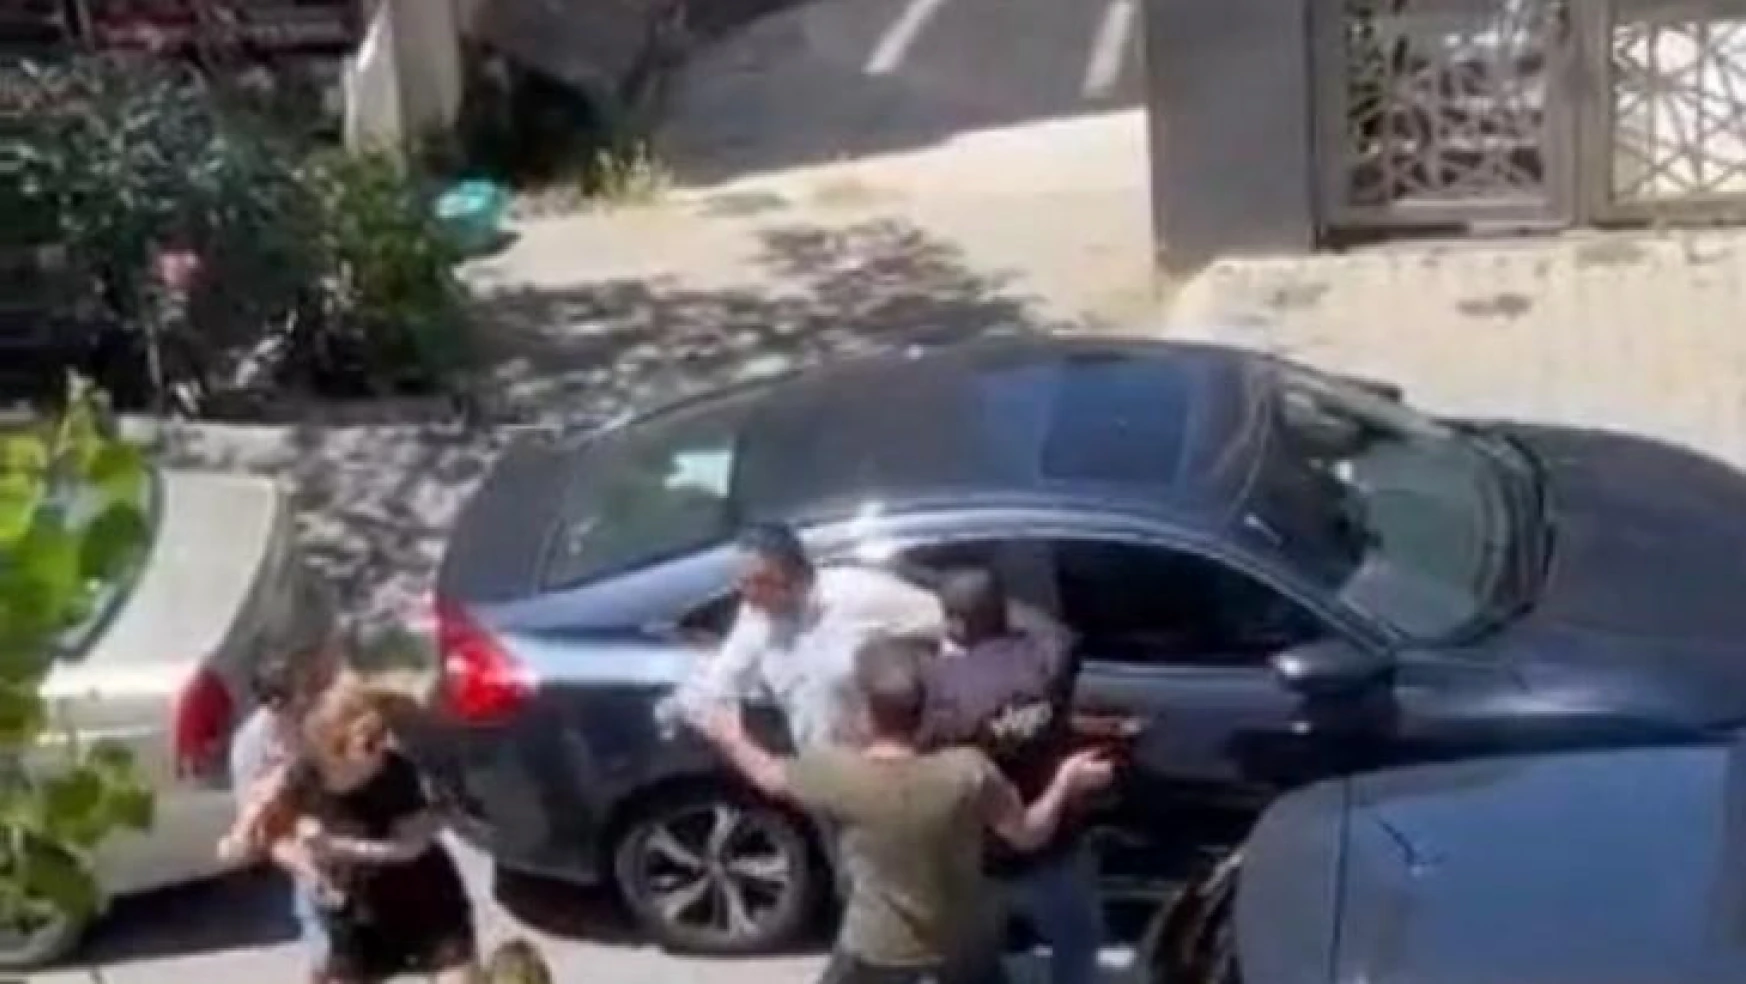 Maltepe'de kadın ile erkek sürücü arasındaki yol verme tartışması kamerada